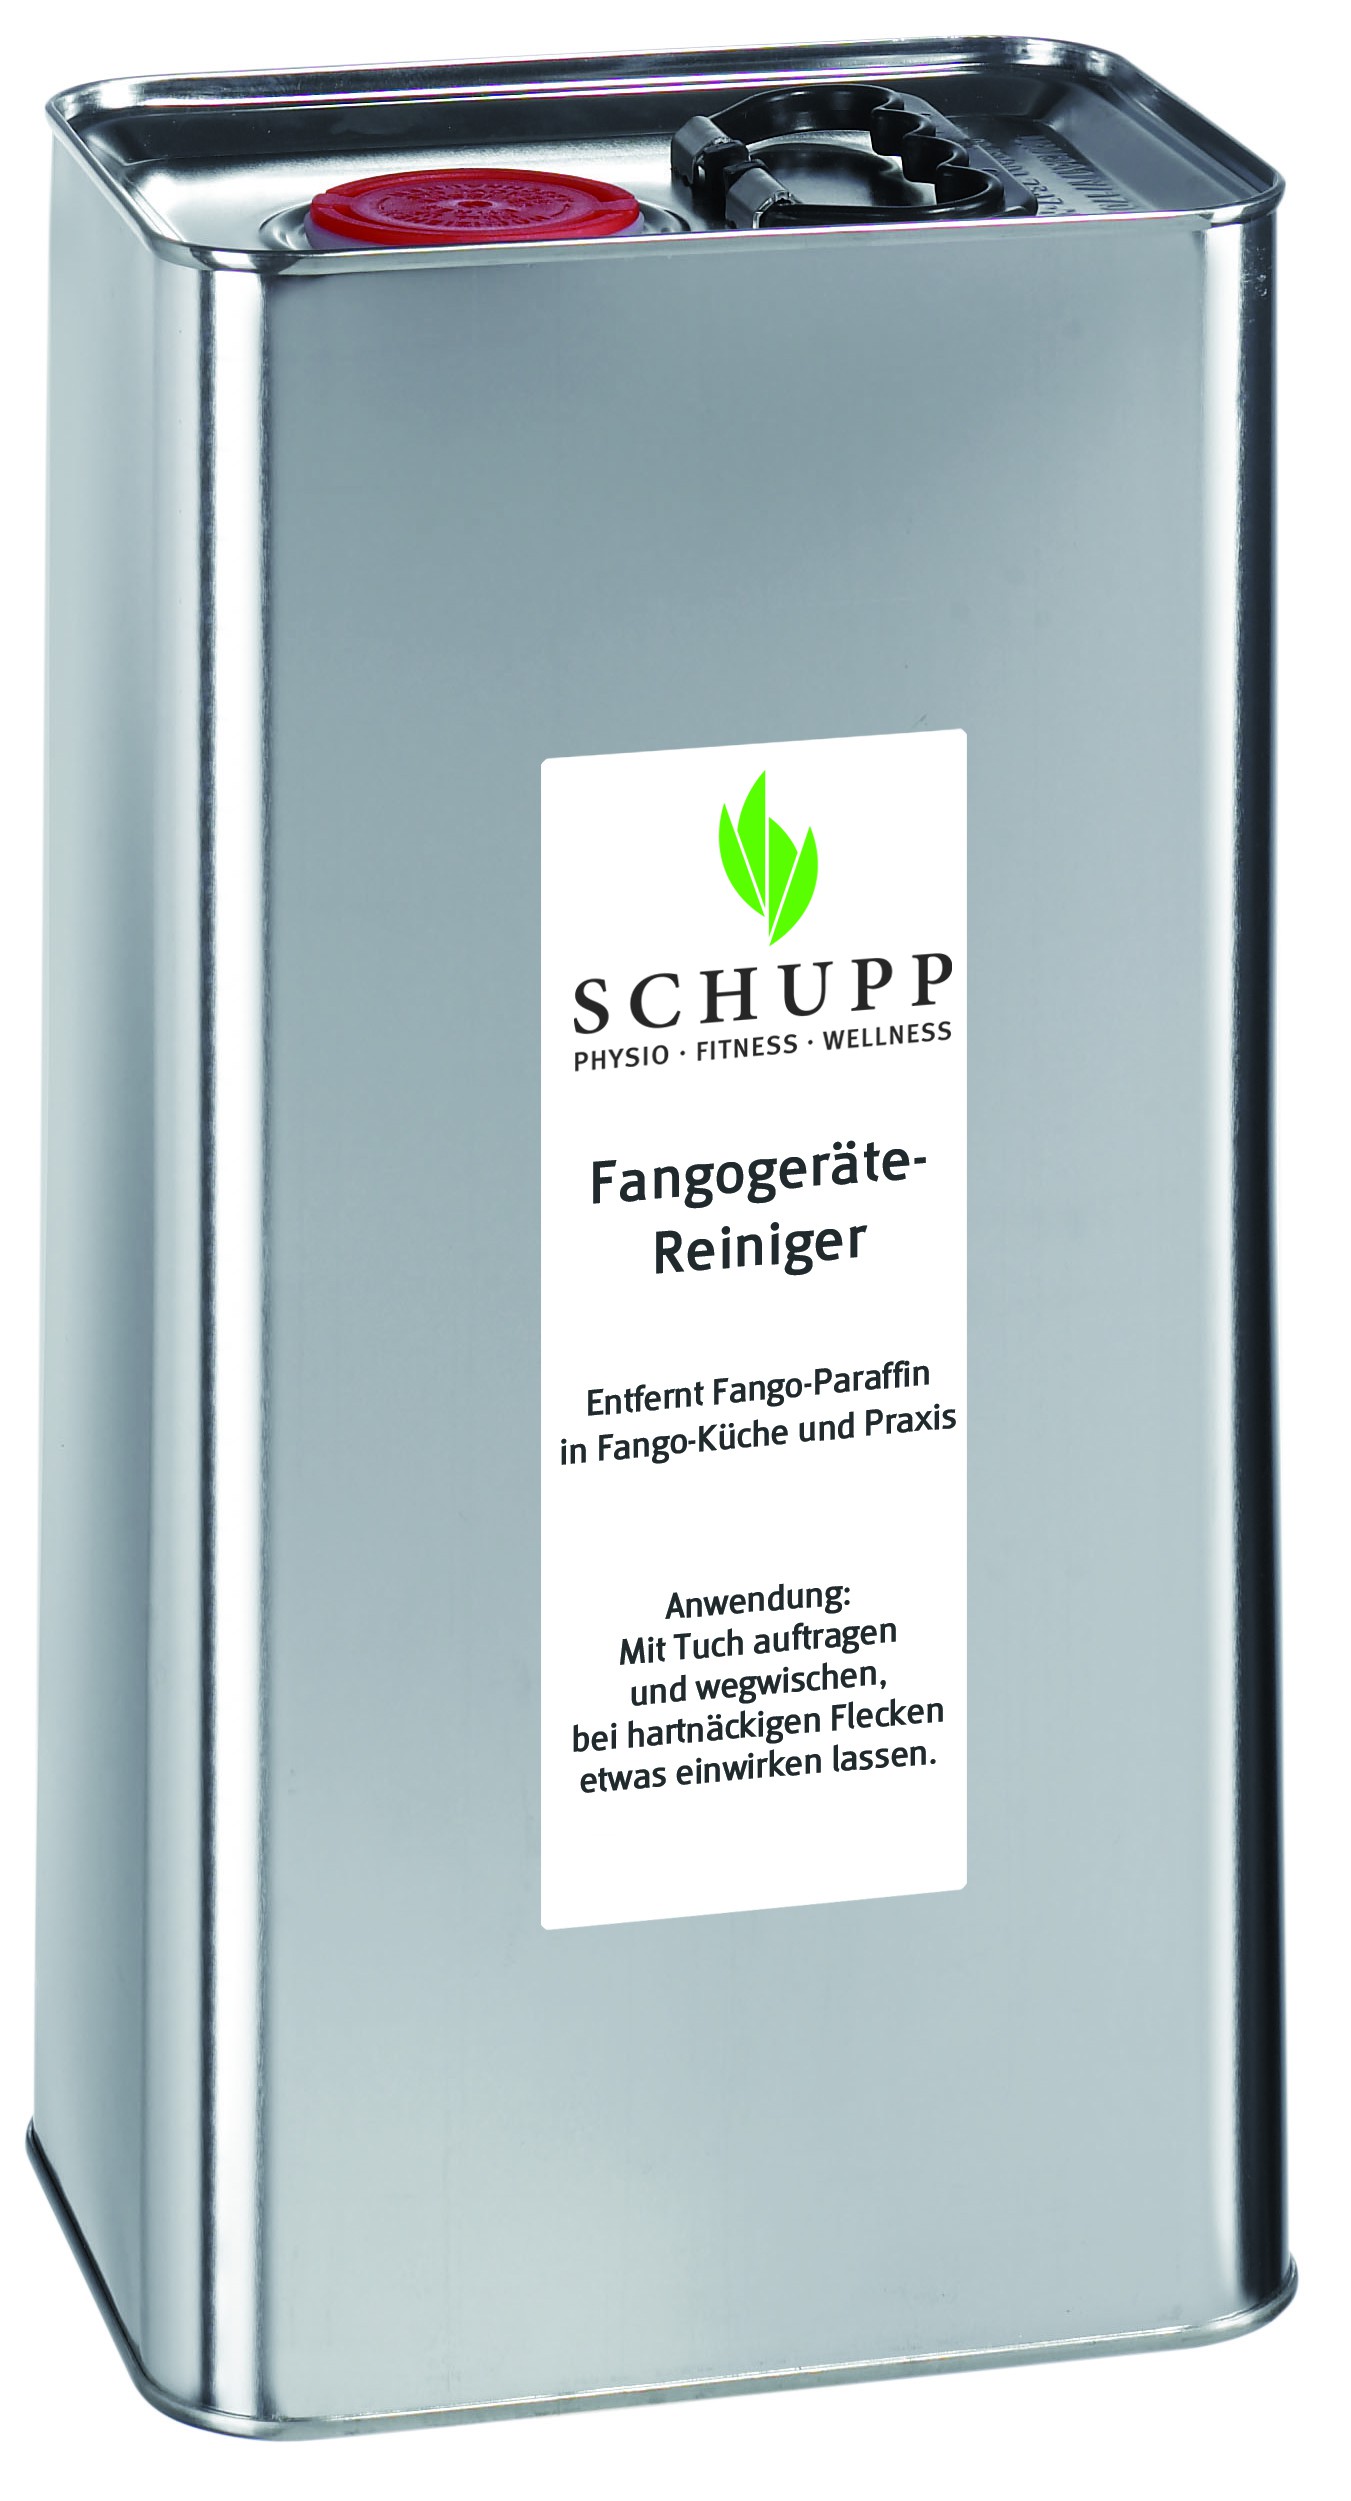 Środek do dezynfekcji urządzeń Fango (5L) - Schuppur Fangogerate Reiniger